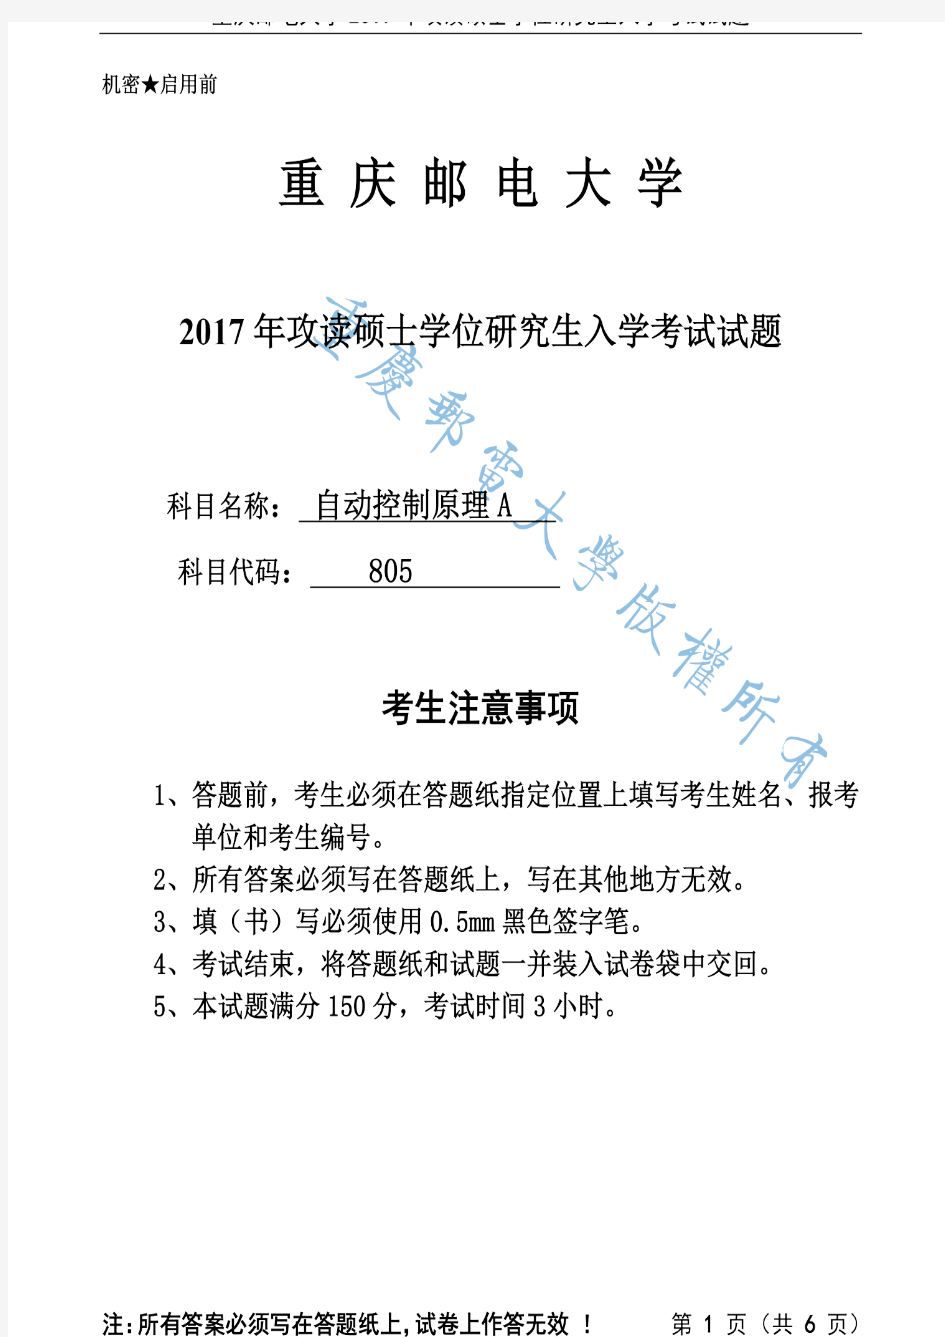 重庆邮电大学2017年《805自动控制原理》考研专业课真题试卷